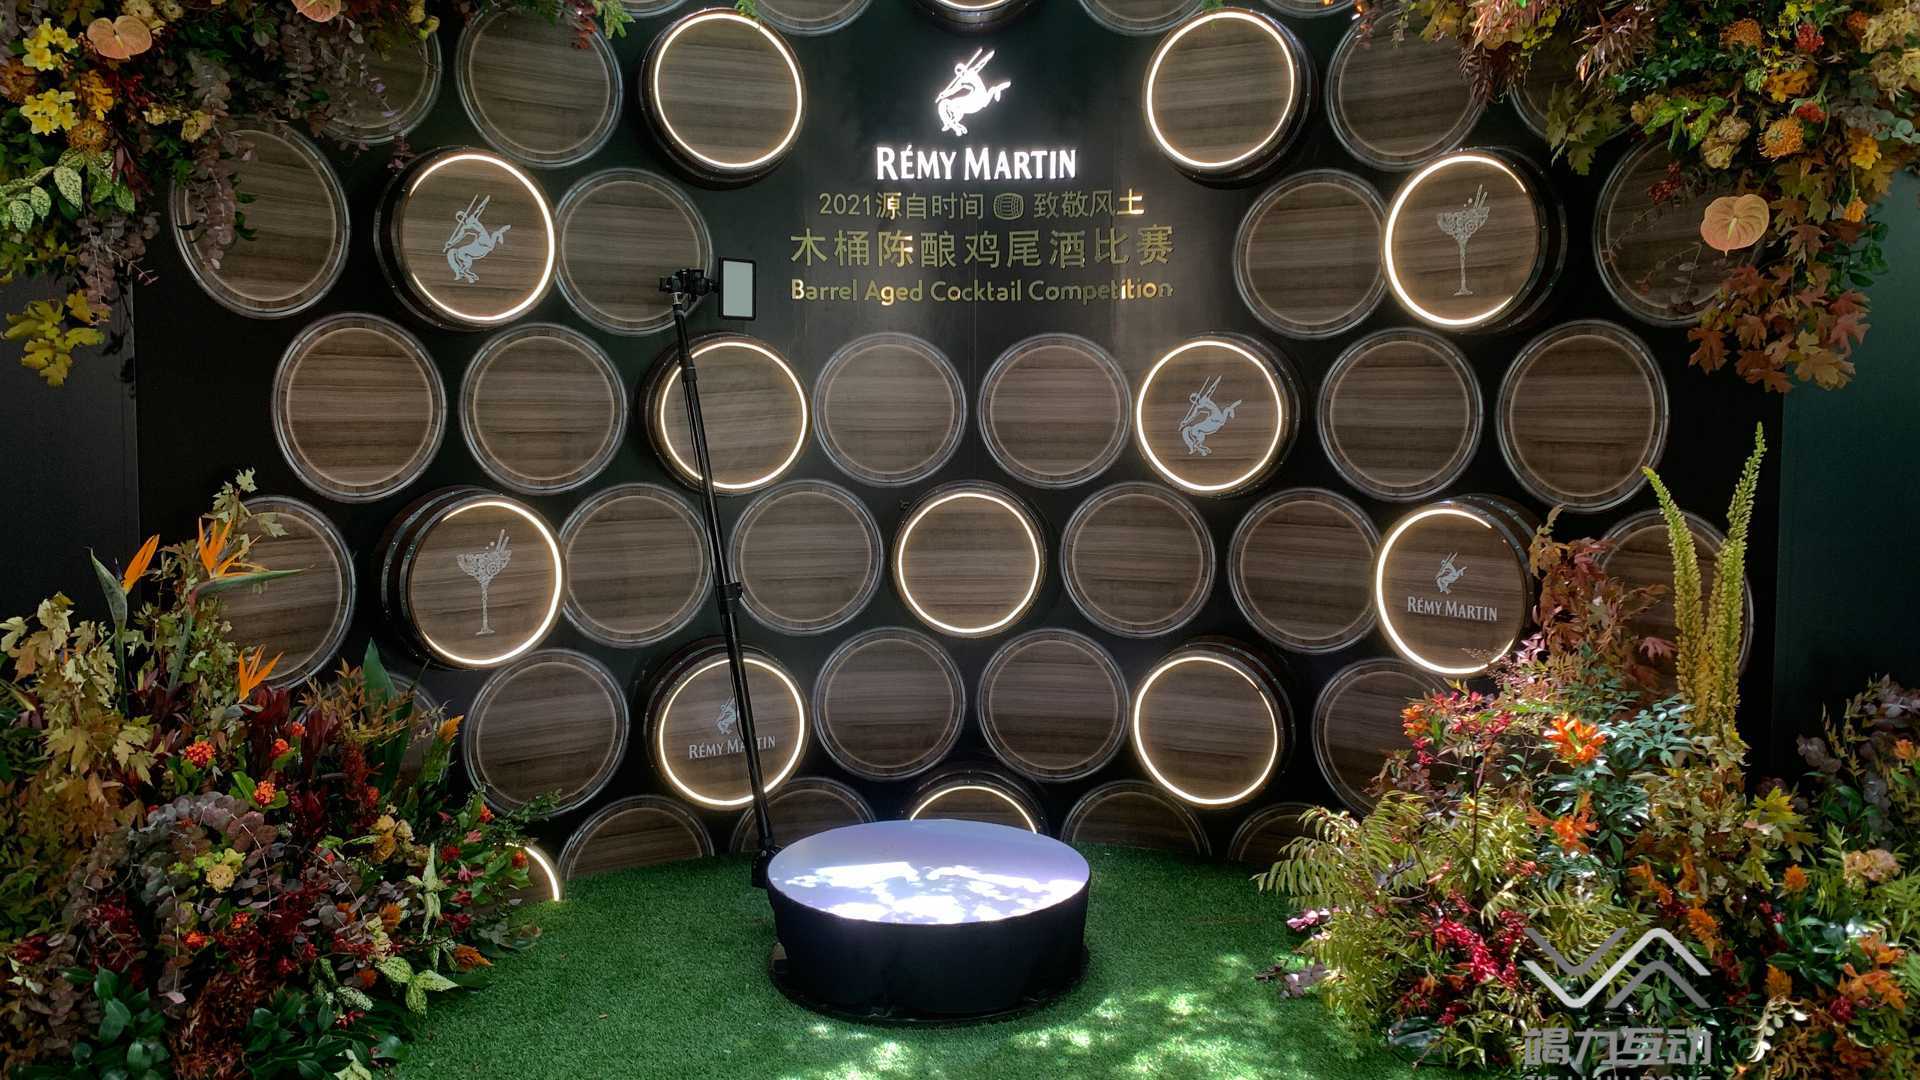 上海木桶陈酿鸡尾酒比赛/360升格网红打卡互动装置